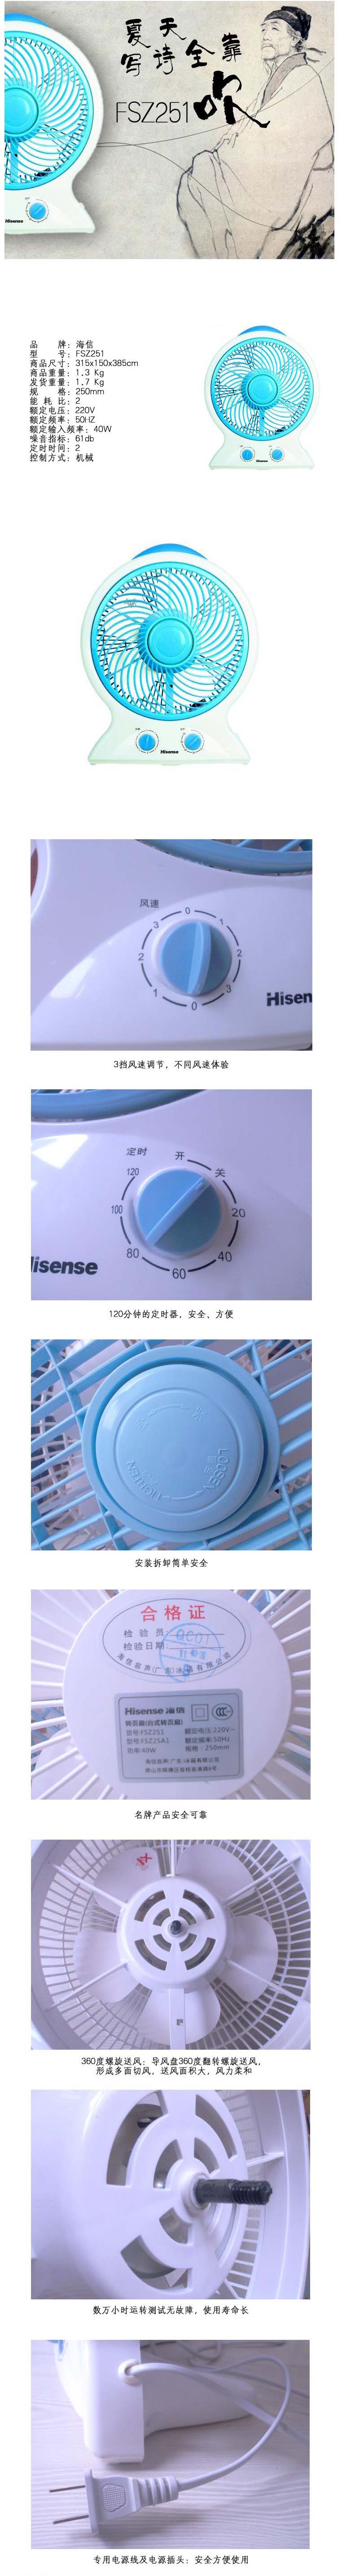 【海信FSZ251电风扇】海信（Hisense）FSZ251转页扇【图片 价格 品牌 报价】.jpg